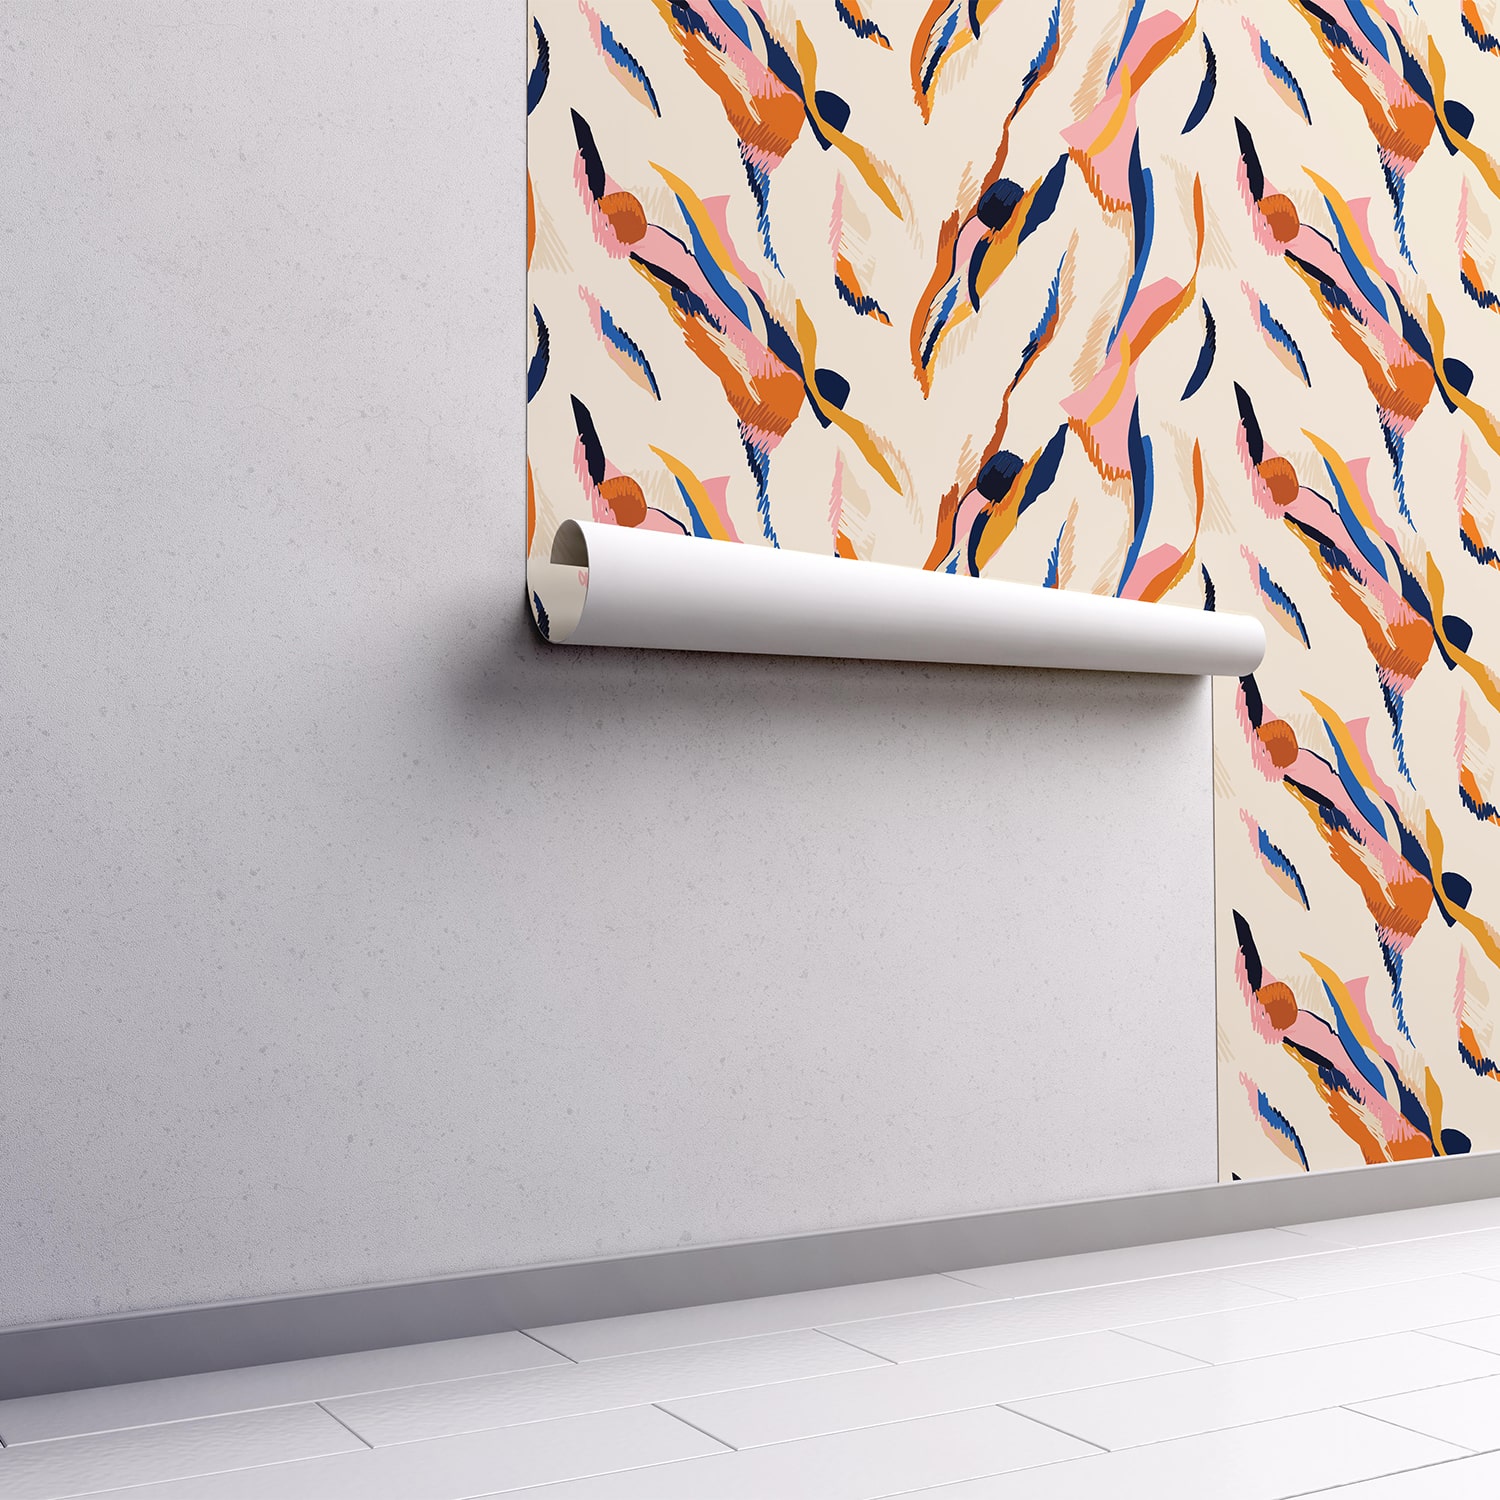 PP31-papier-peint-adhesif-decoratif-revetement-vinyle-motifs-art-contemporain-renovation-meuble-mur-5